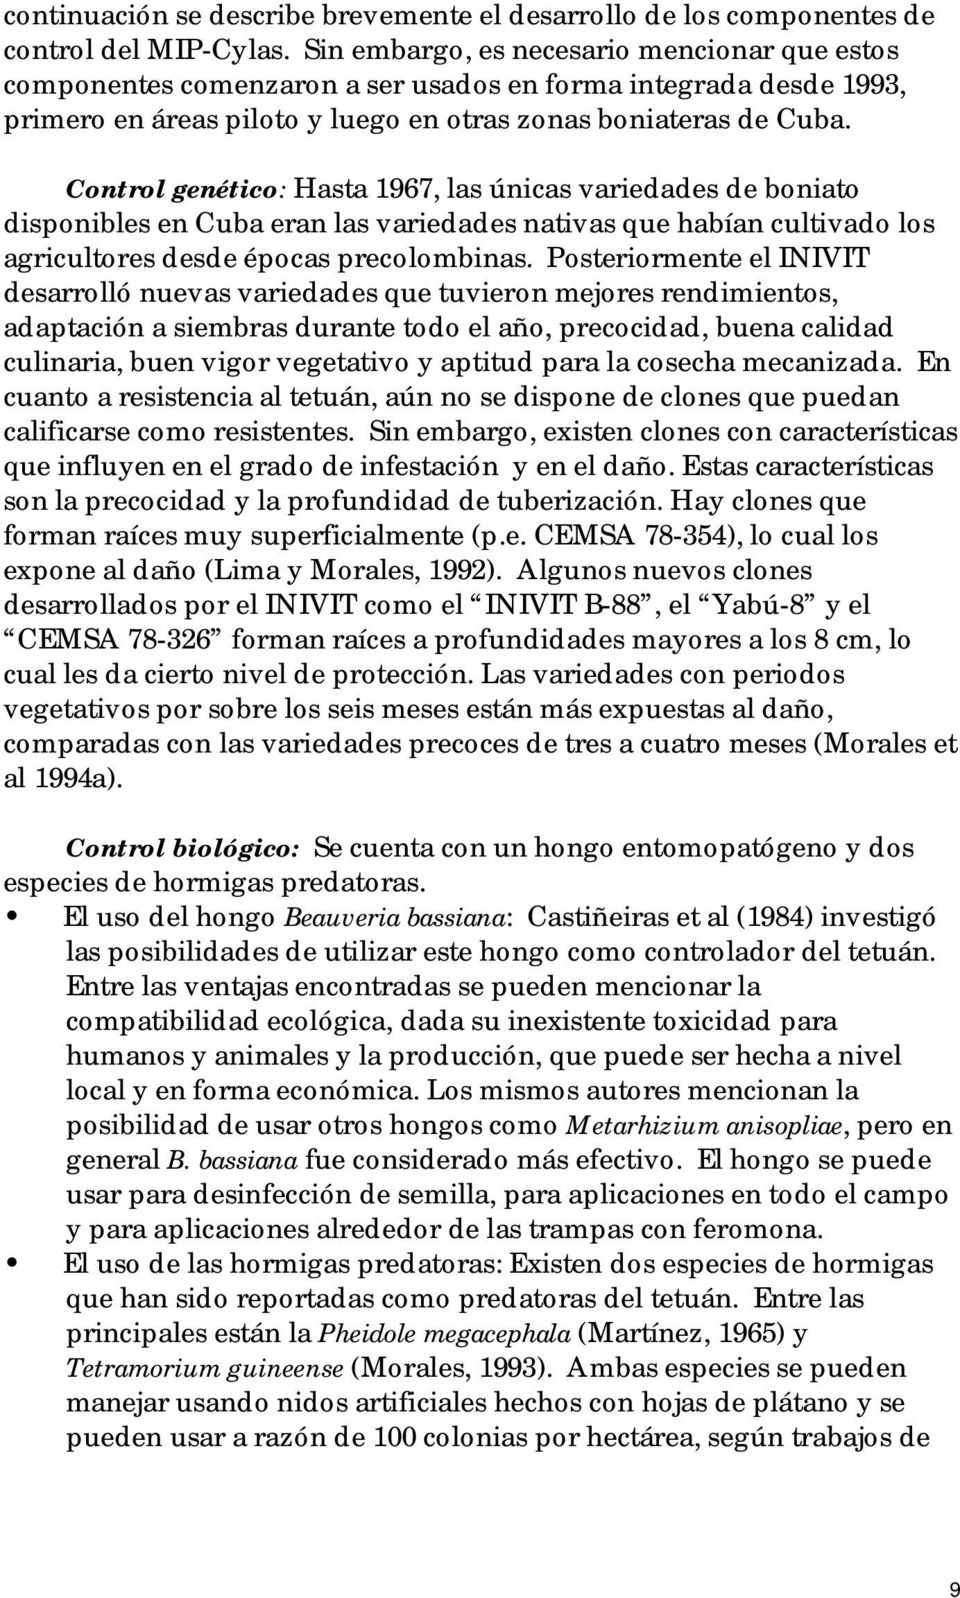 Control genético: Hasta 1967, las únicas variedades de boniato disponibles en Cuba eran las variedades nativas que habían cultivado los agricultores desde épocas precolombinas.